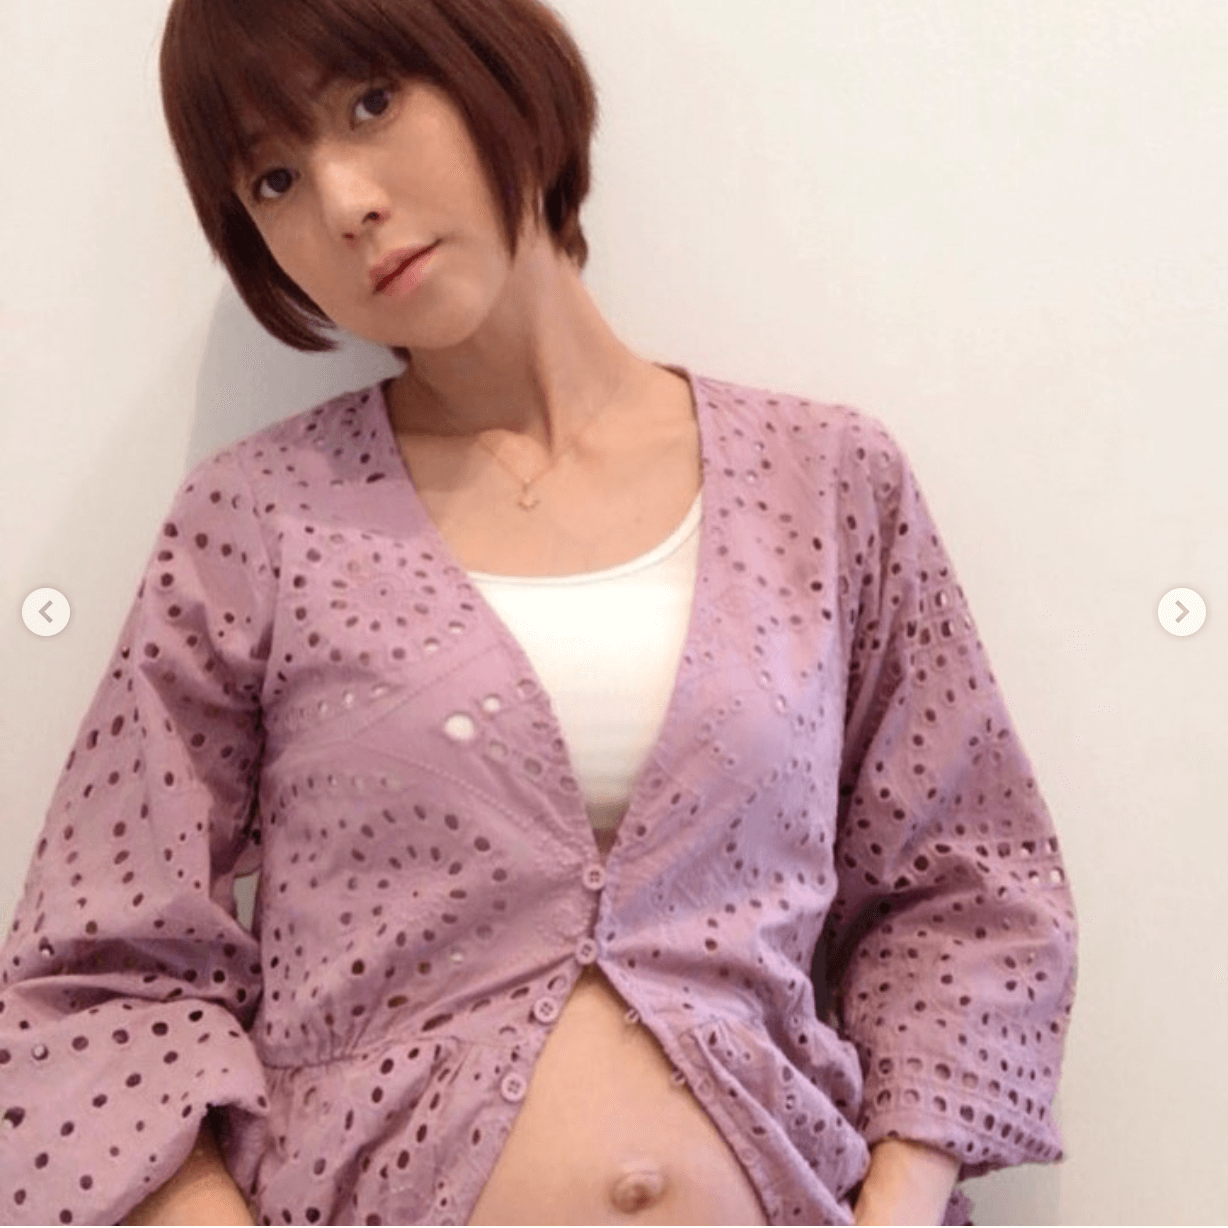 Hitomi 妊娠8か月のセルフマタニティフォト公開に キレイなお腹 大きくなりましたね の声 E Talentbank Co Ltd